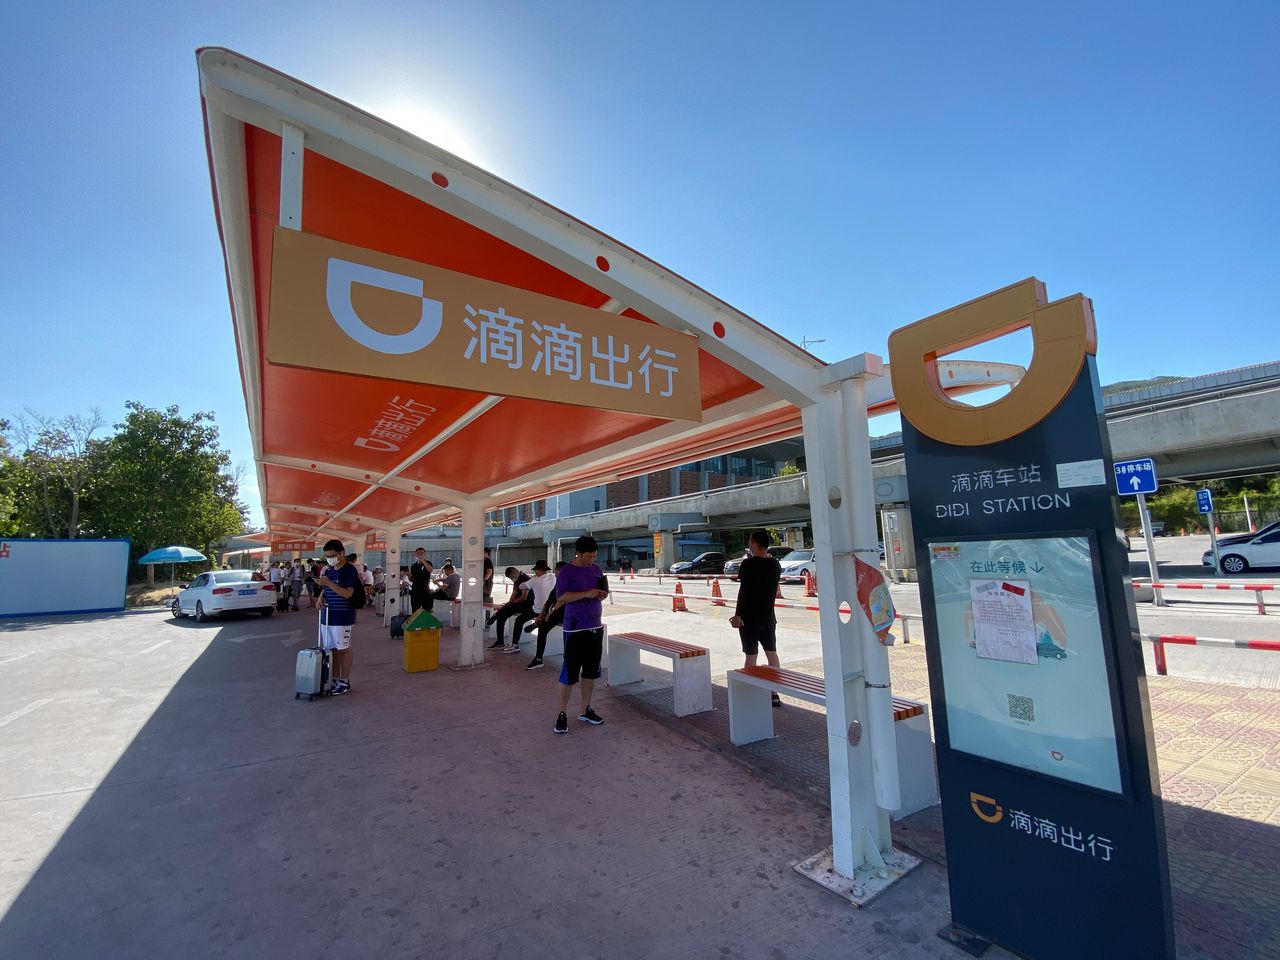 Taxistation van Didi in Quanzhou. 377 miljoen Chinezen gebruiken de app regelmatig. Uber heeft wereldwijd 93 miljoen gebruikers.